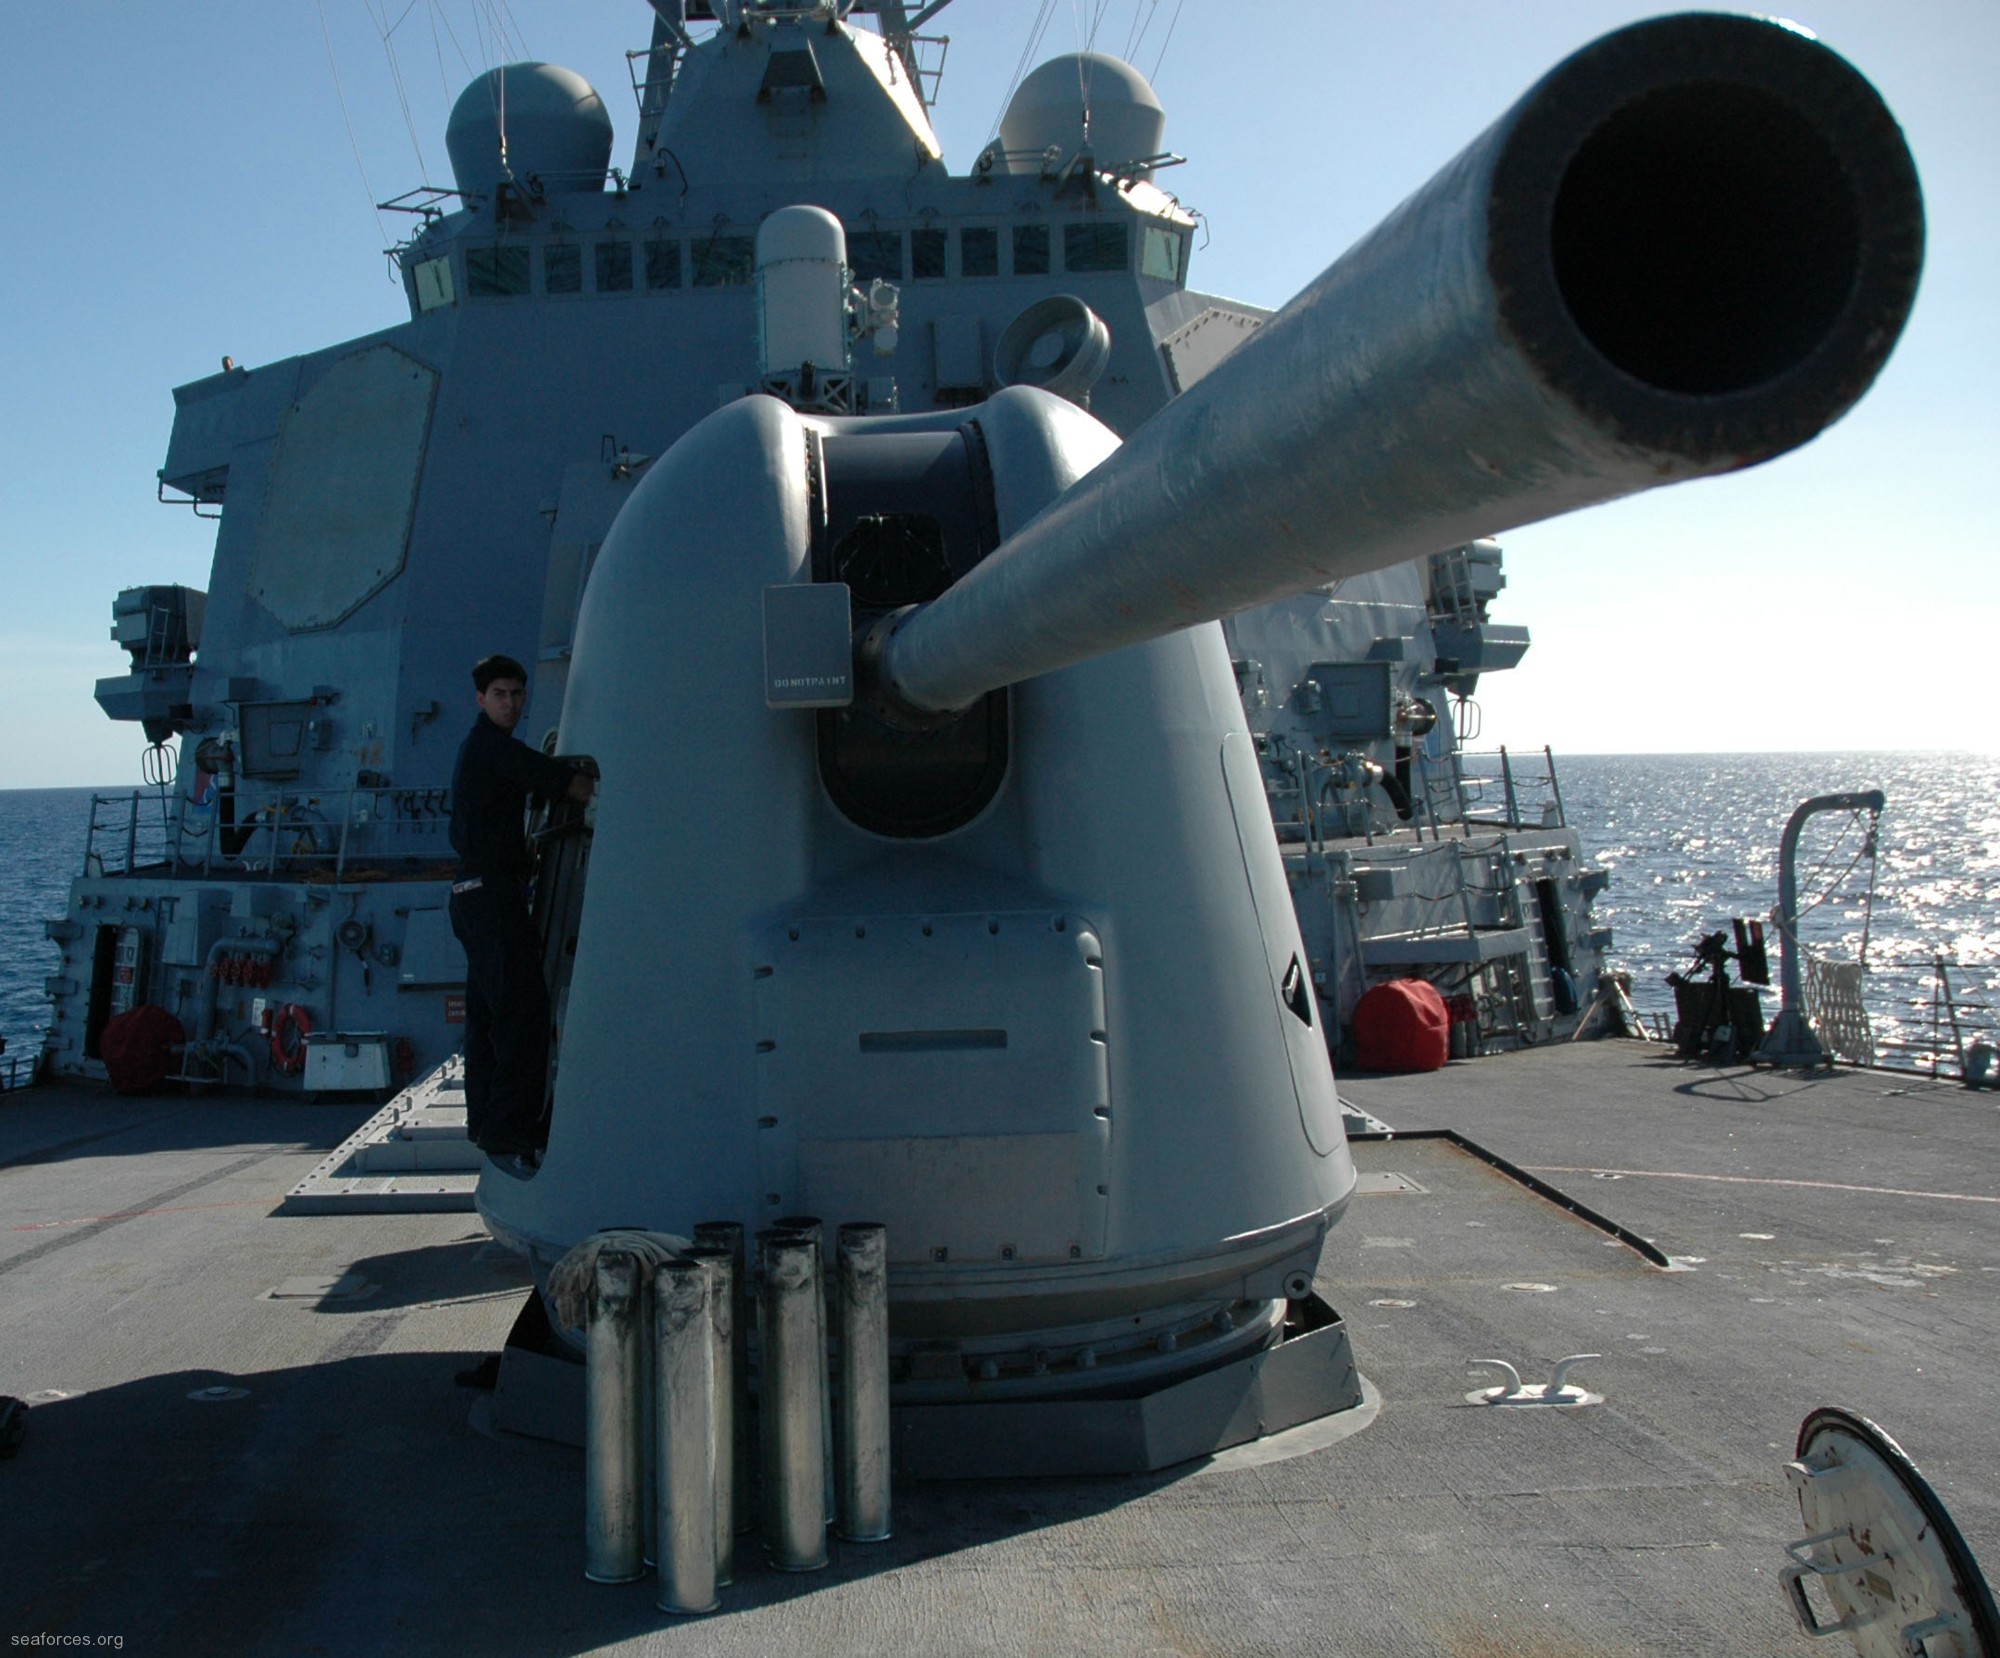 ddg-54 uss curtis wilbur destroyer us navy 35 mk-45 gun